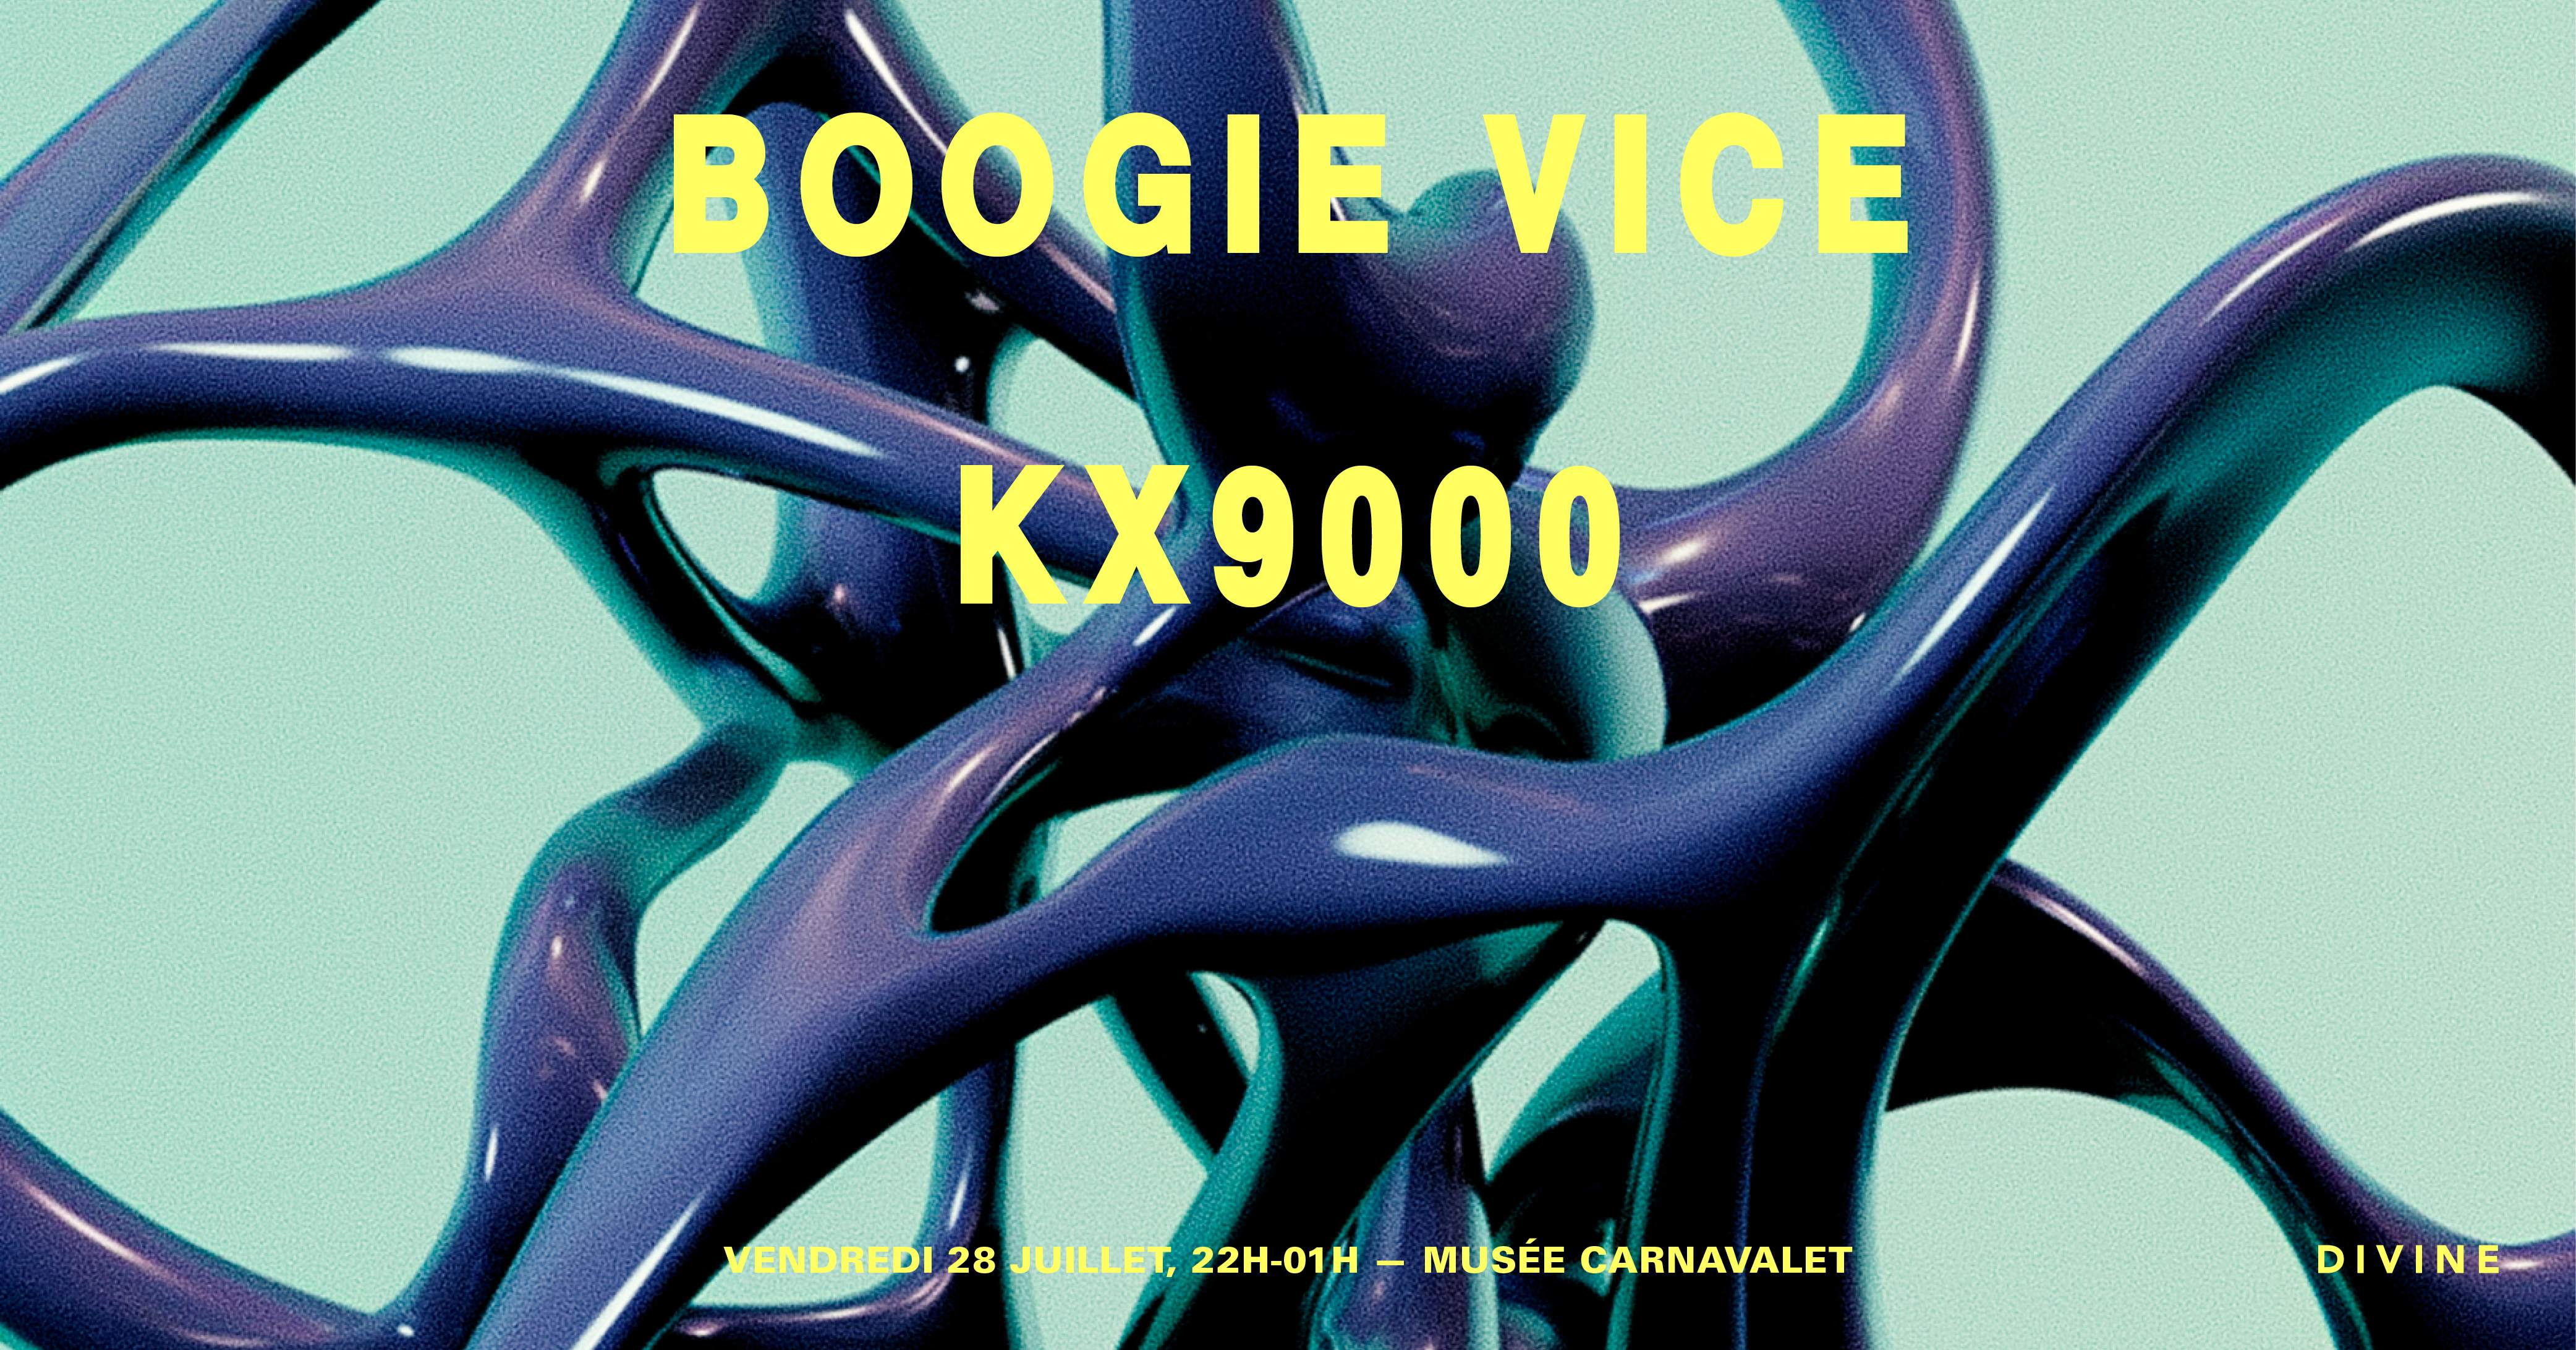 (Postponed) DIVINE — Boogie Vice, Kx9000 - フライヤー表